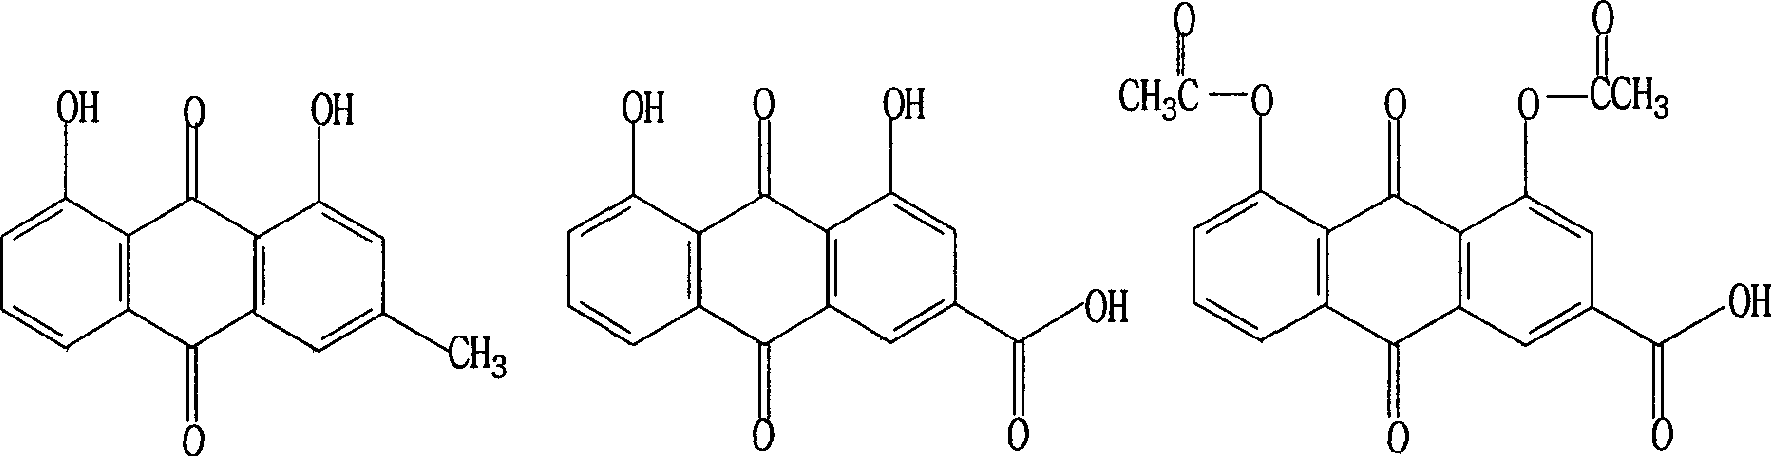 Synthesis method of rhein and diacerein